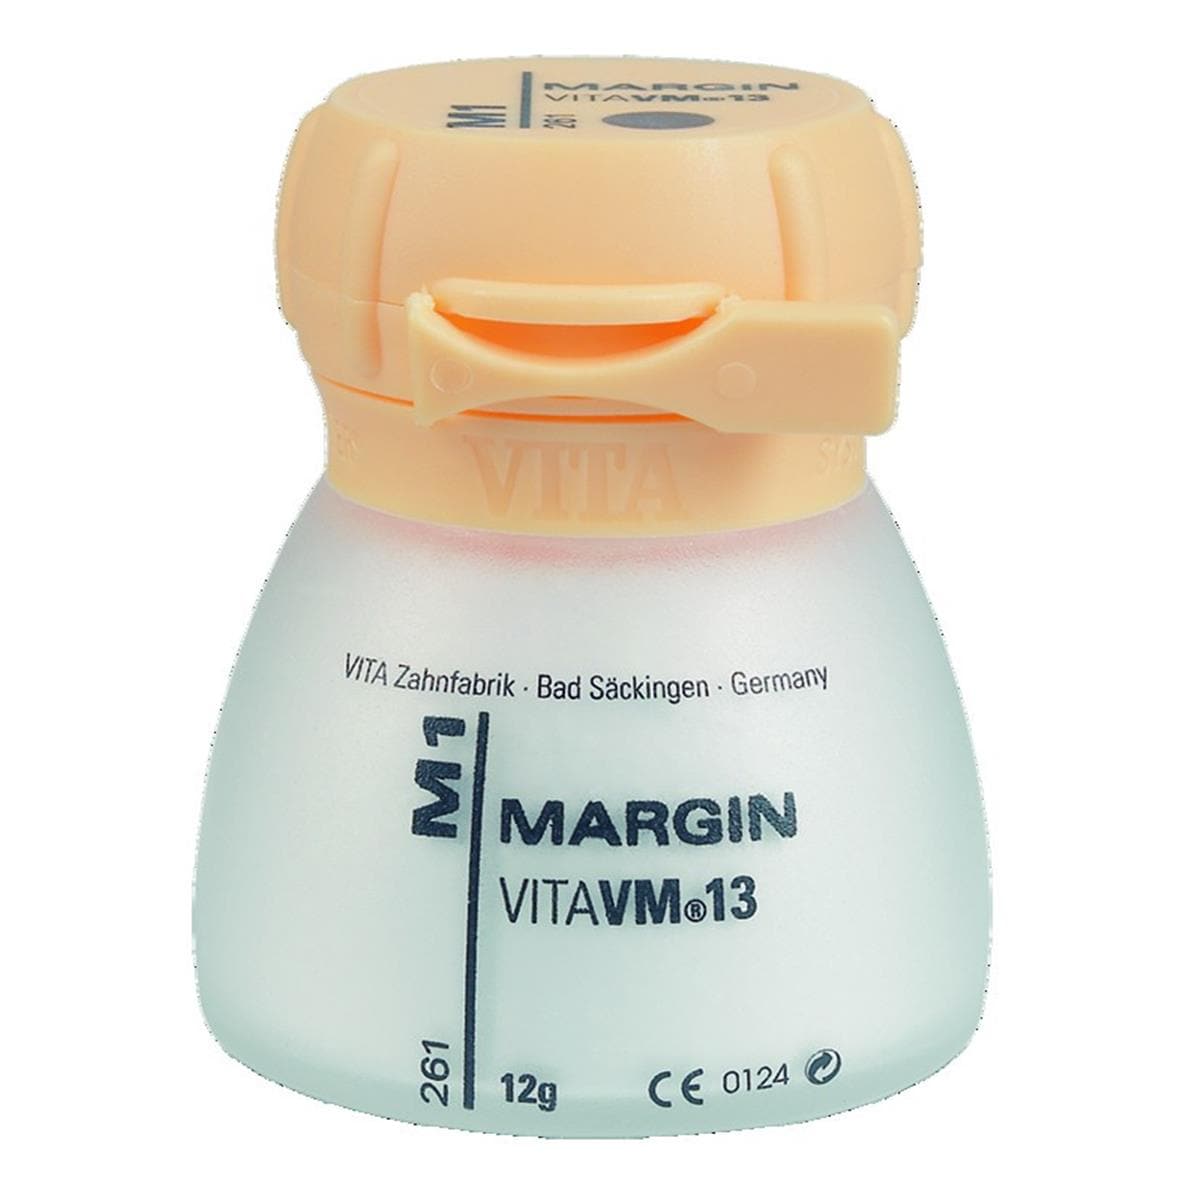 VM13 VITA - Margin - M9 - Le pot de 12 g